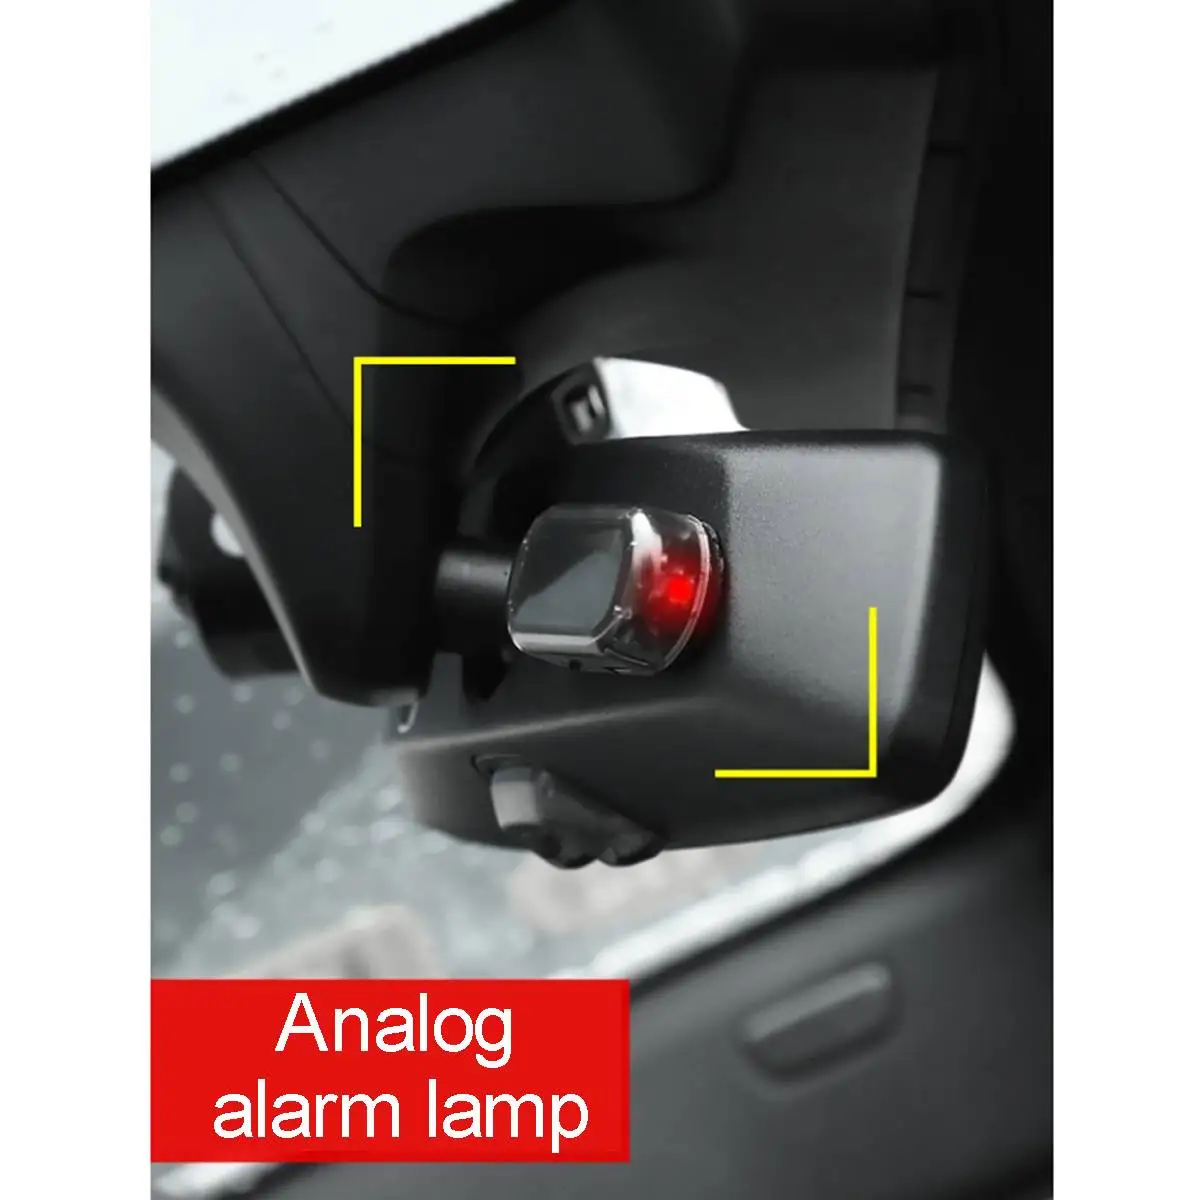 USB Предупреждение ющий Противоугонный свет вся Автомобильная сигнальная лампа автомобиль поддельный свет безопасности Солнечная энергия имитация сигнализации светодиодный мигающий свет